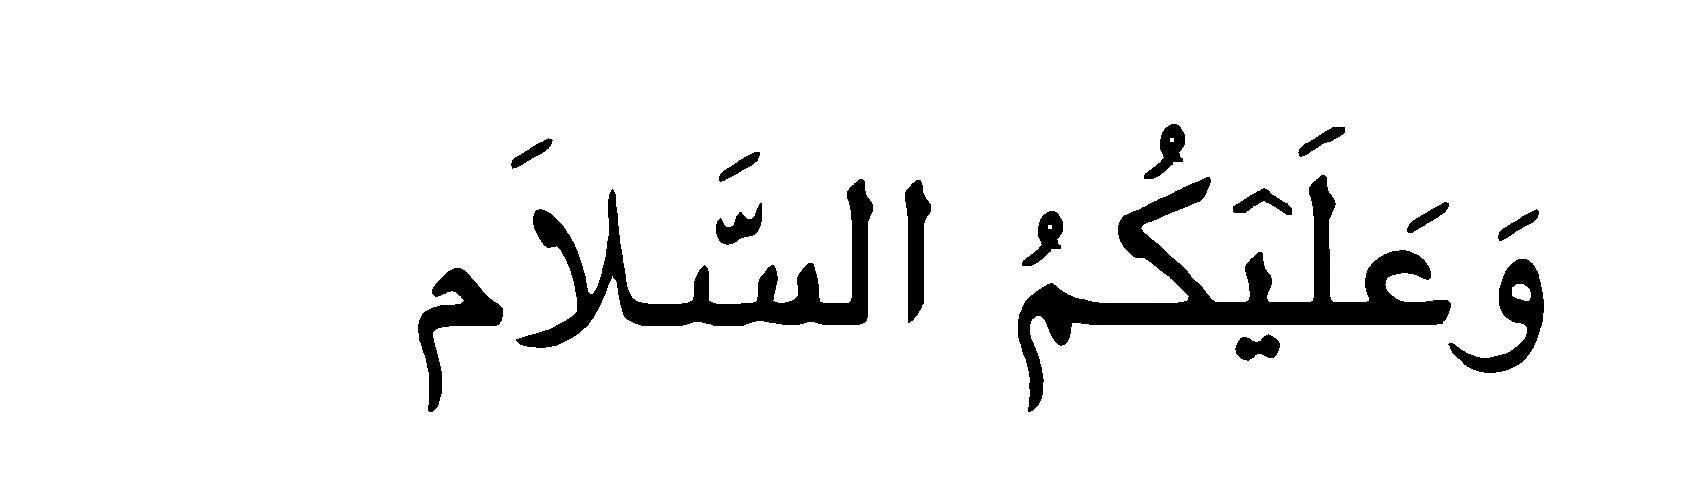 Ассаламу алейкум рахматуллах на арабском. Салям на арабском. Салам алейкум на арабском. Приветствие на арабском языке. АС саляму алейкум на арабском языке.